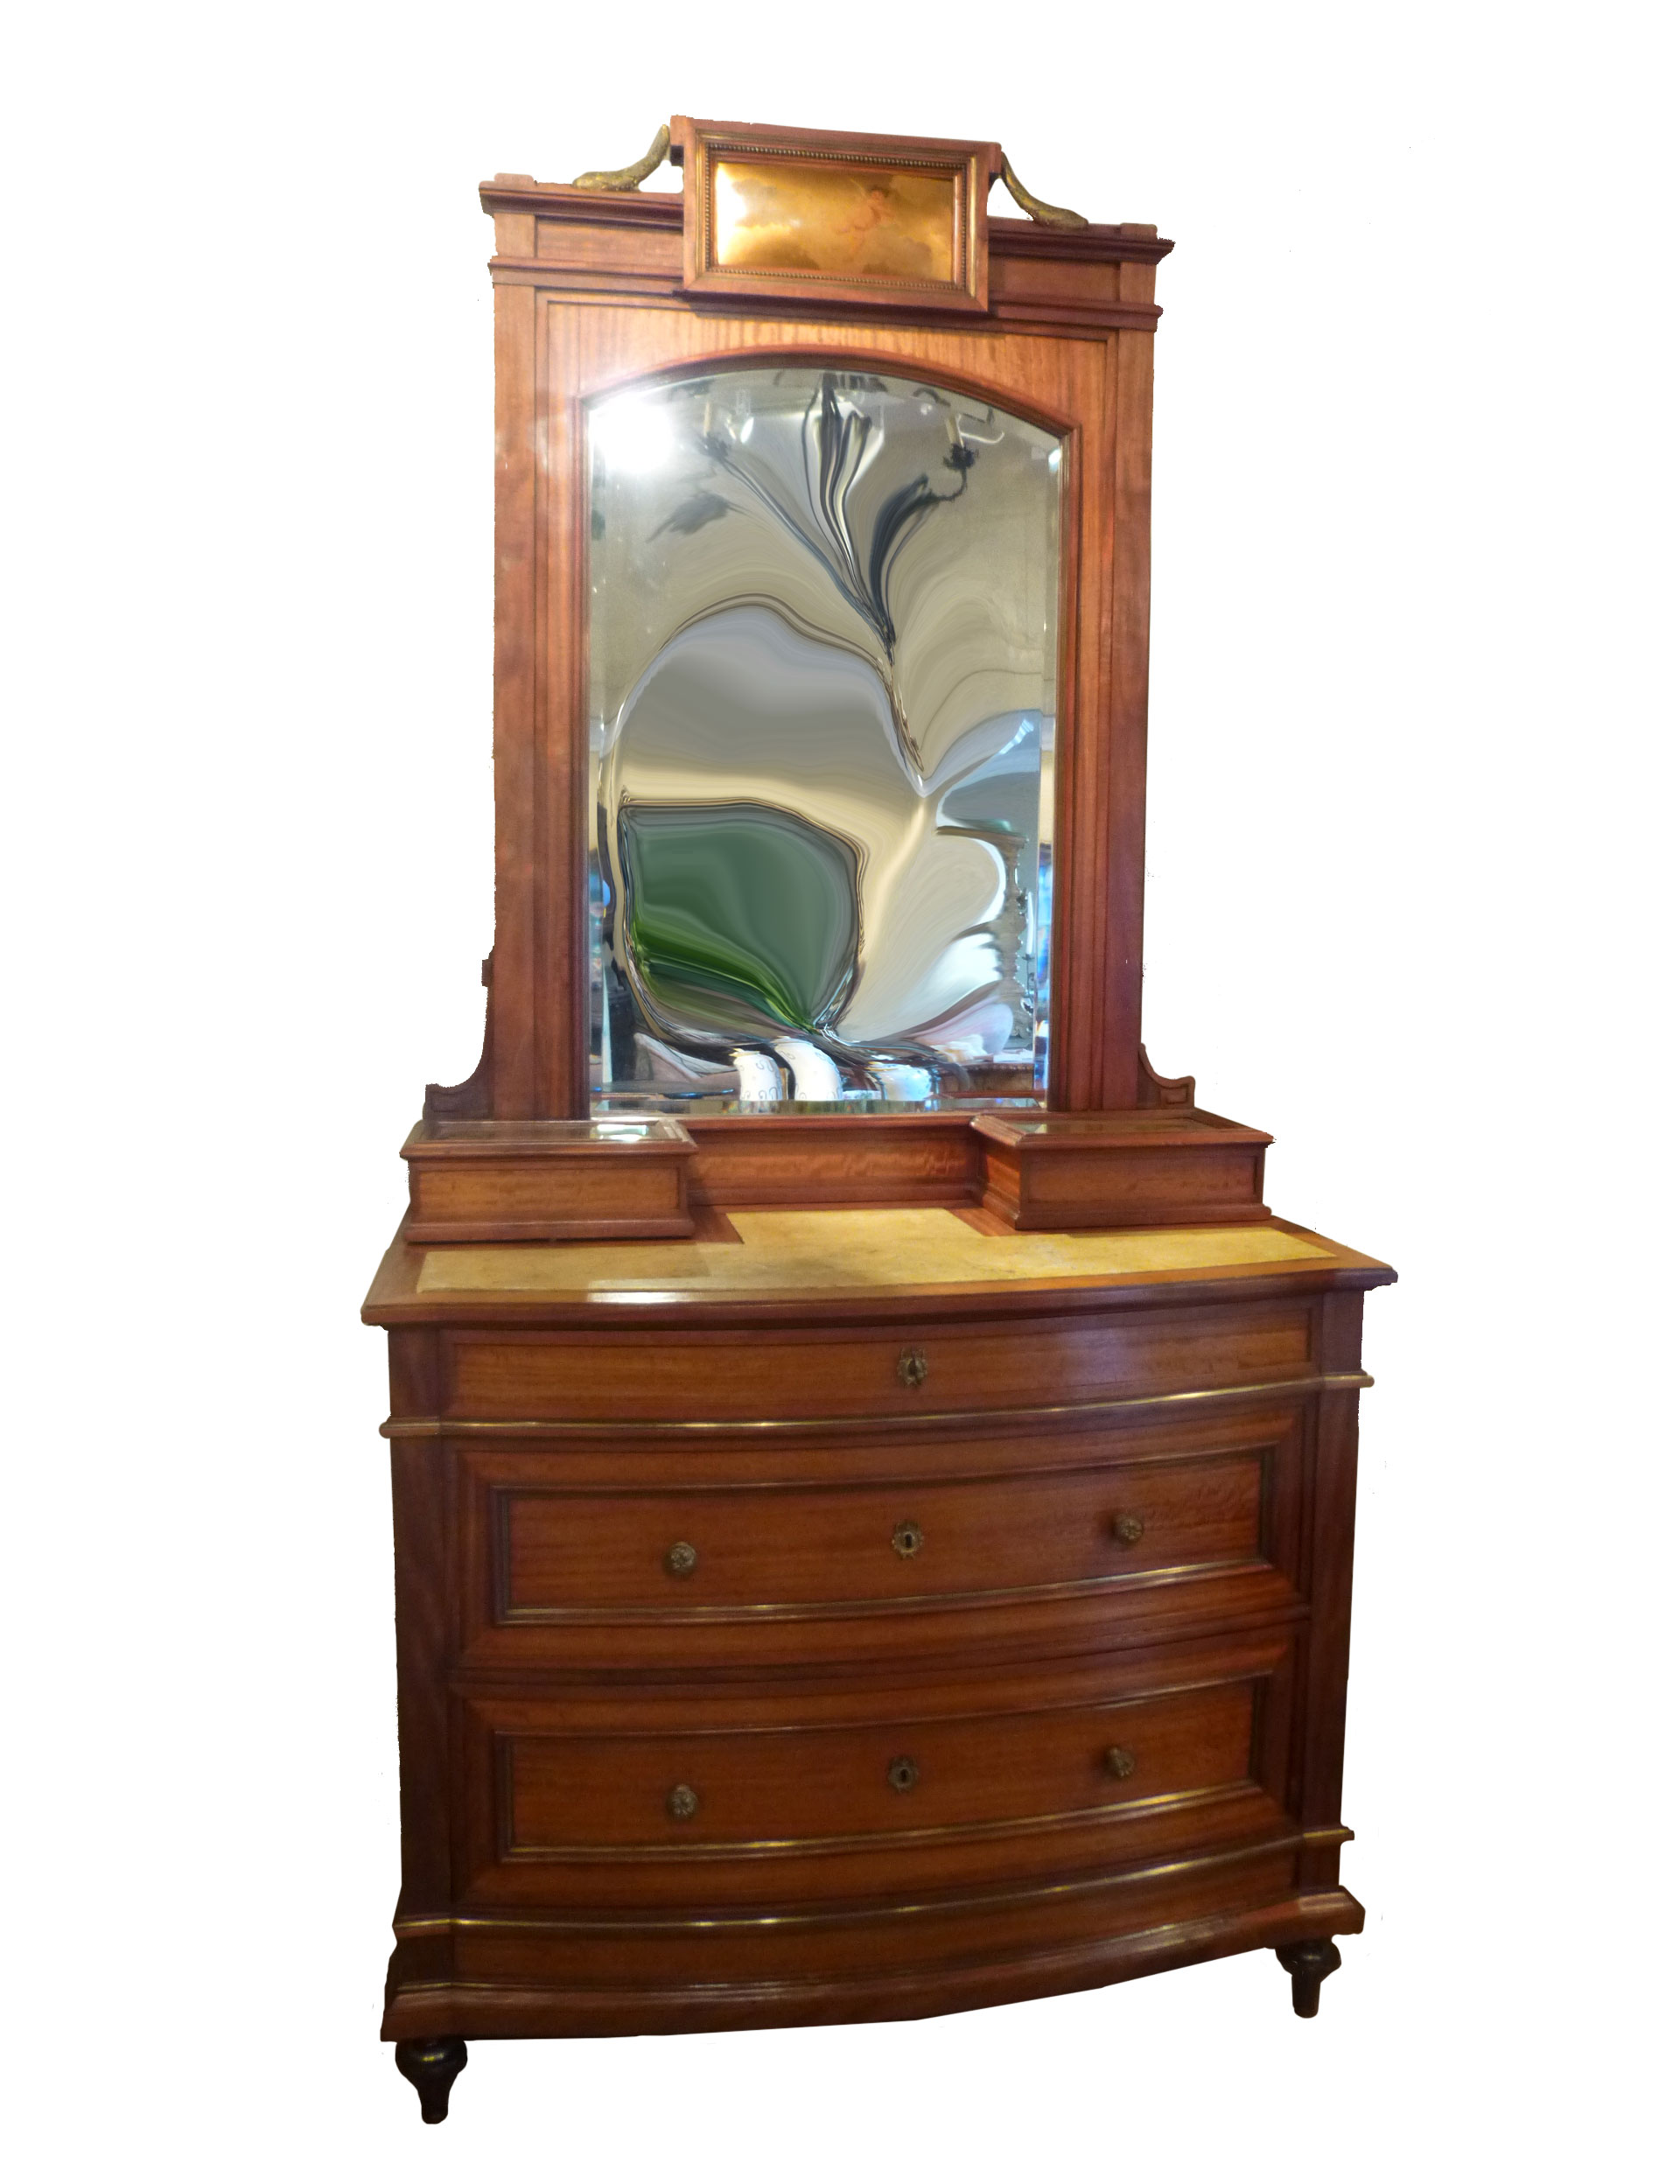 Antique Italian Art Nouveau Dresser, ca 1890 — Bellini's Antique Italia